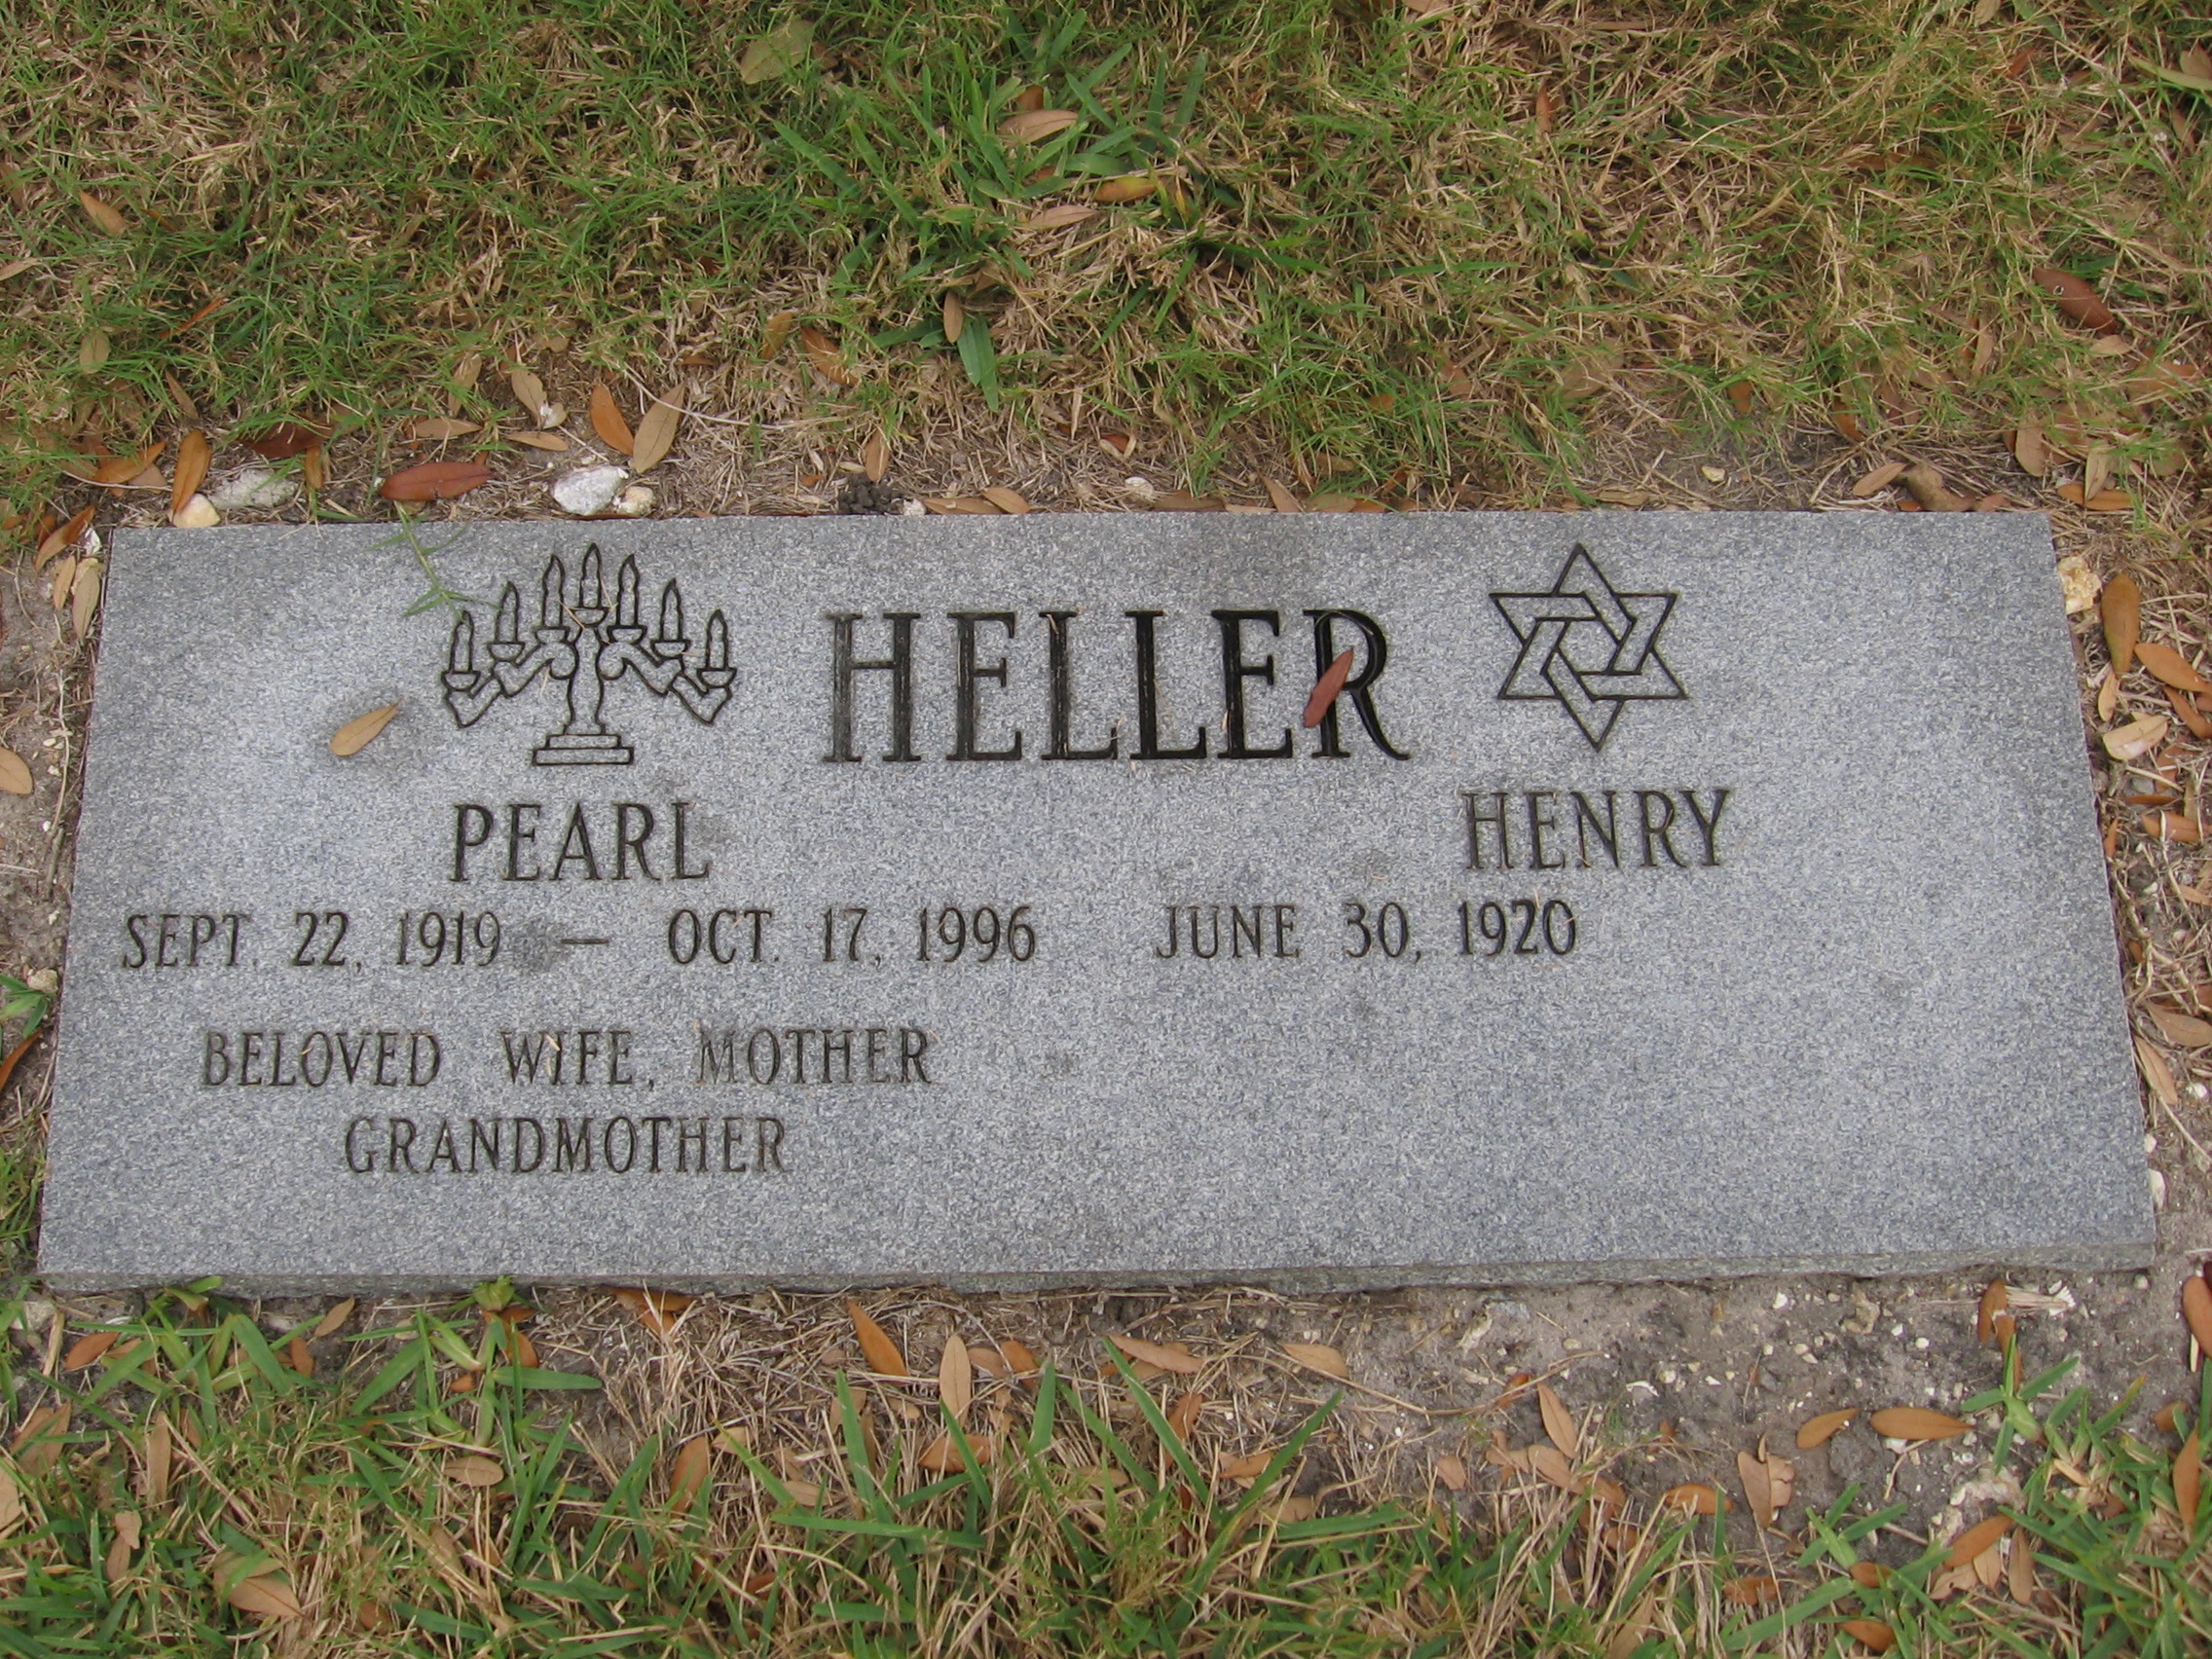 Pearl Heller